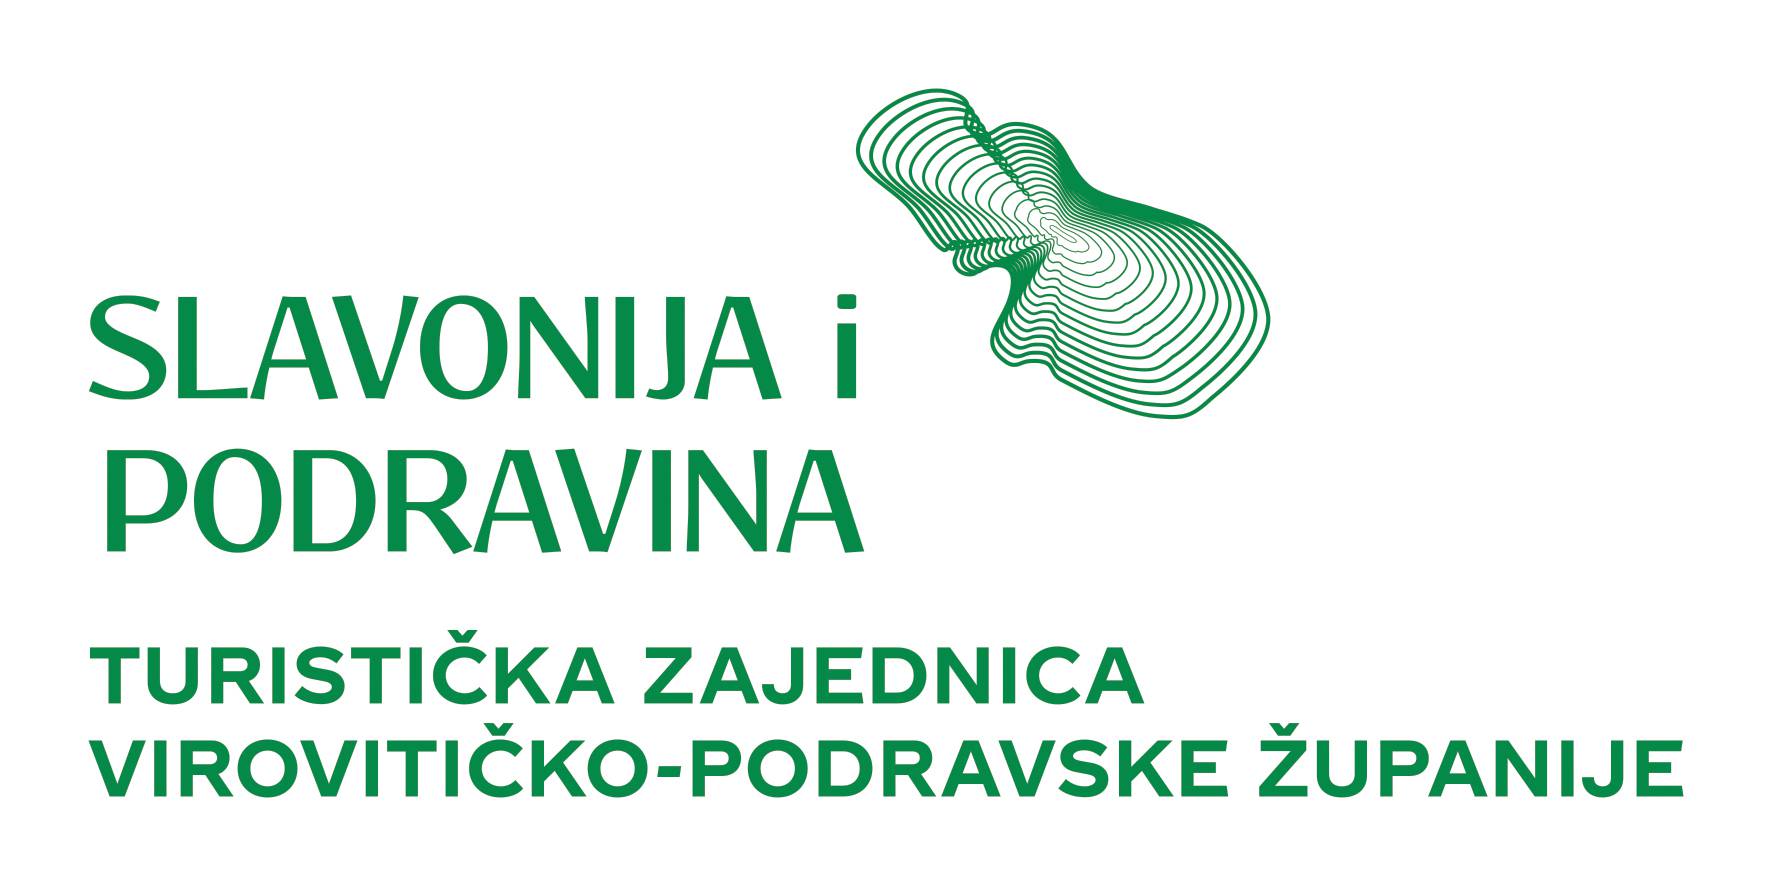 Slavonija i Podravina - monokromatski